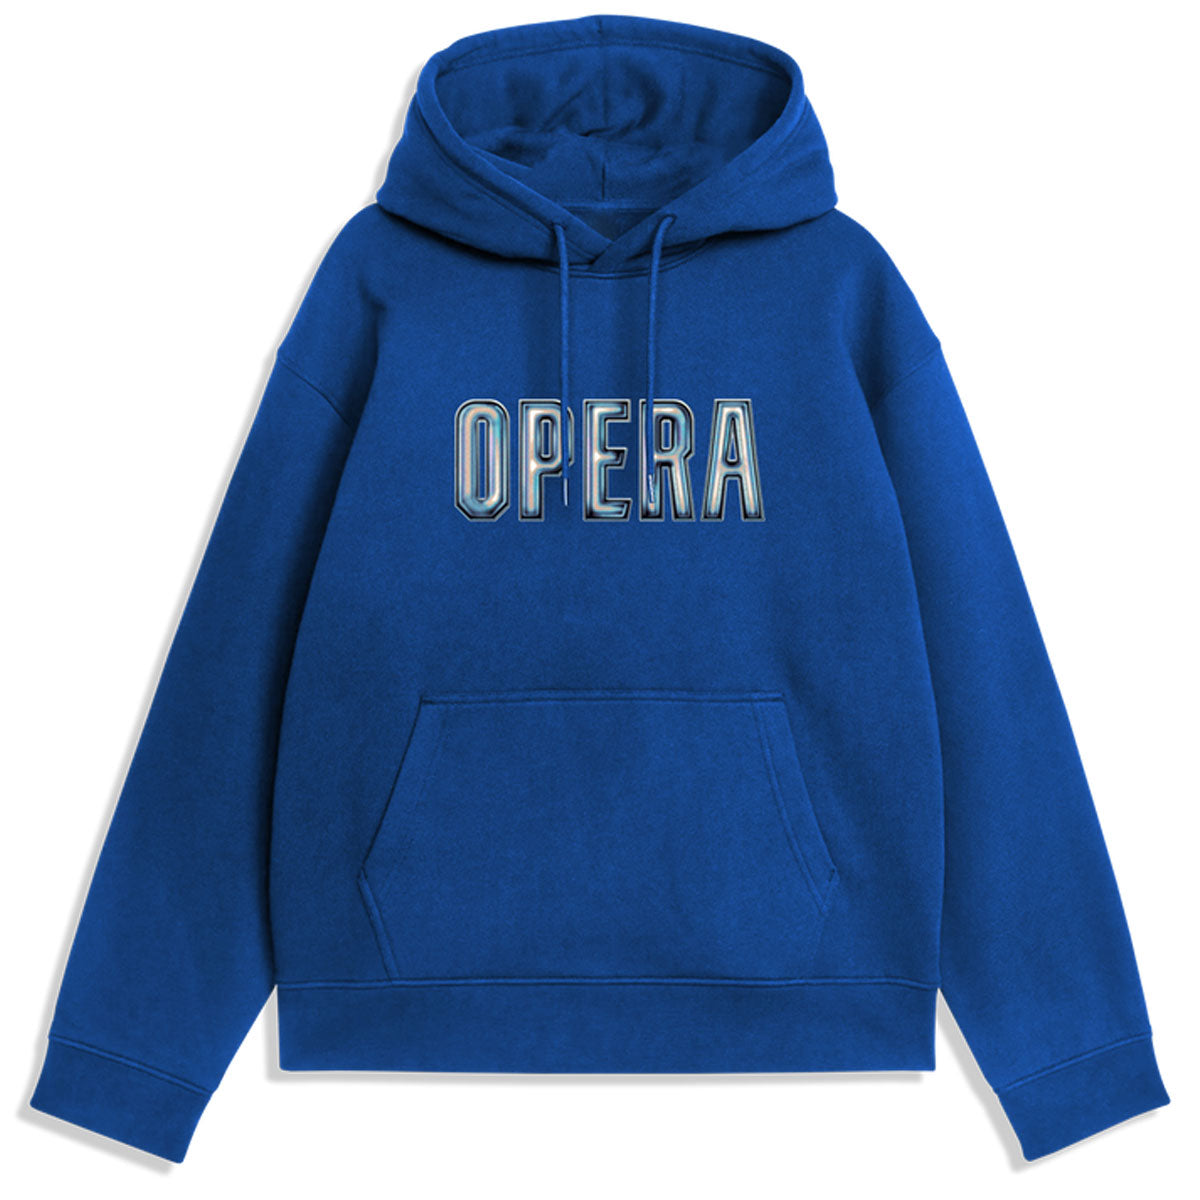 Opera 3D Hoodie - Royal Blue image 1